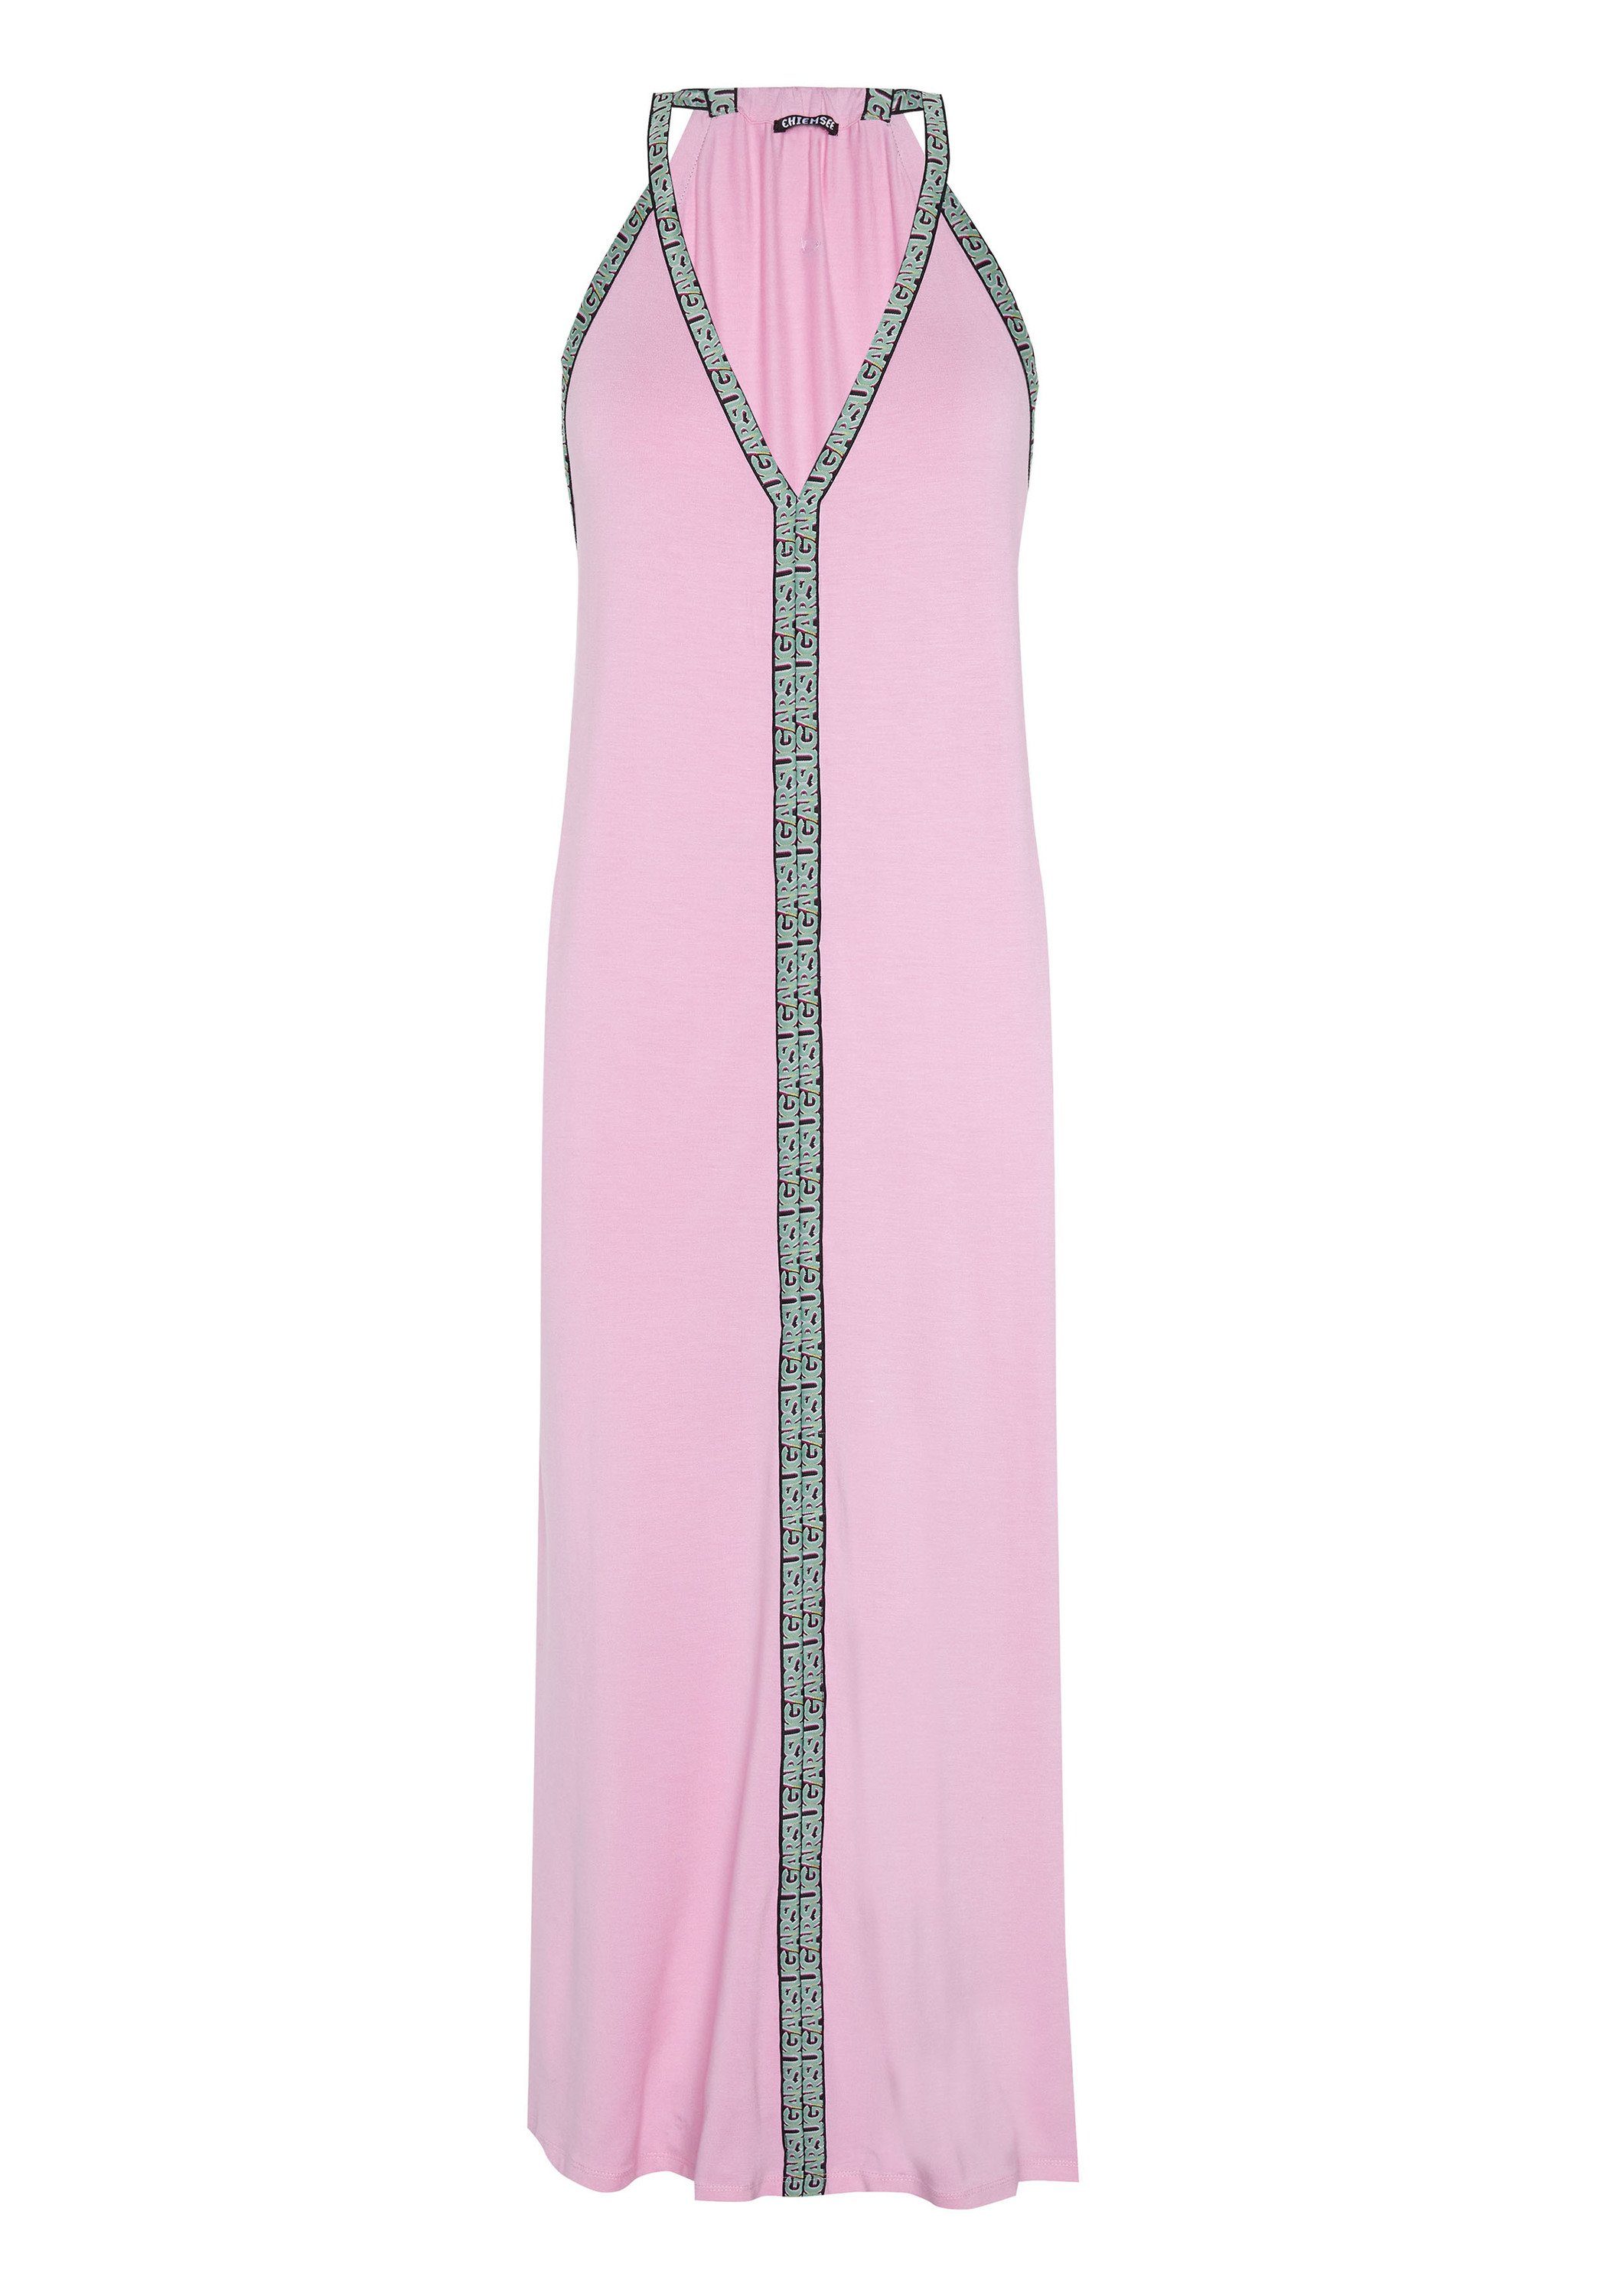 Chiemsee Maxikleid Langes Kleid Prism Pink